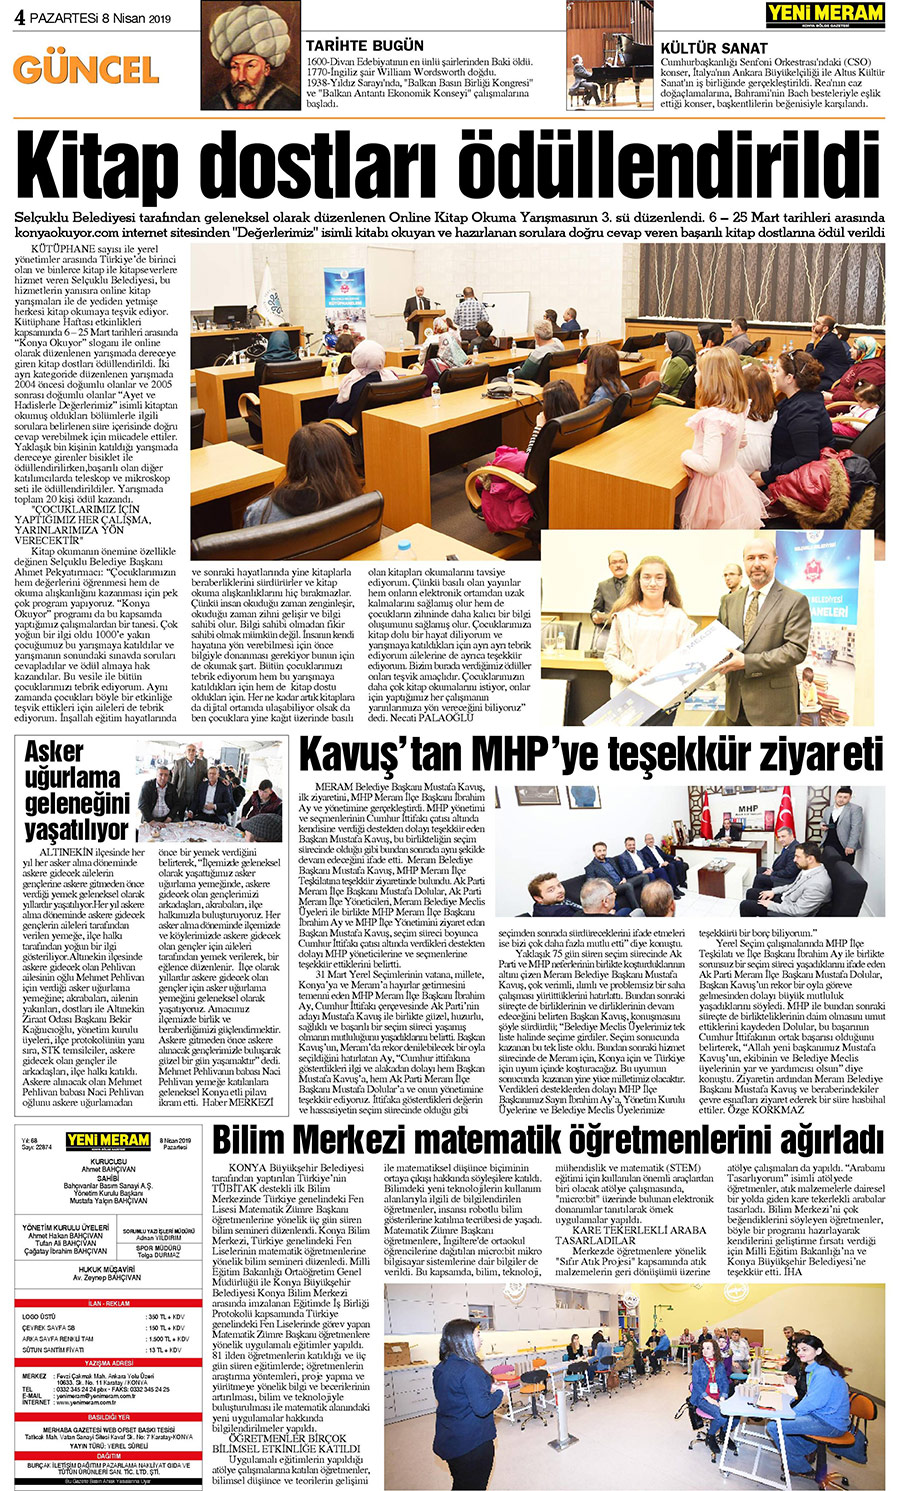 8 Nisan 2019 Yeni Meram Gazetesi